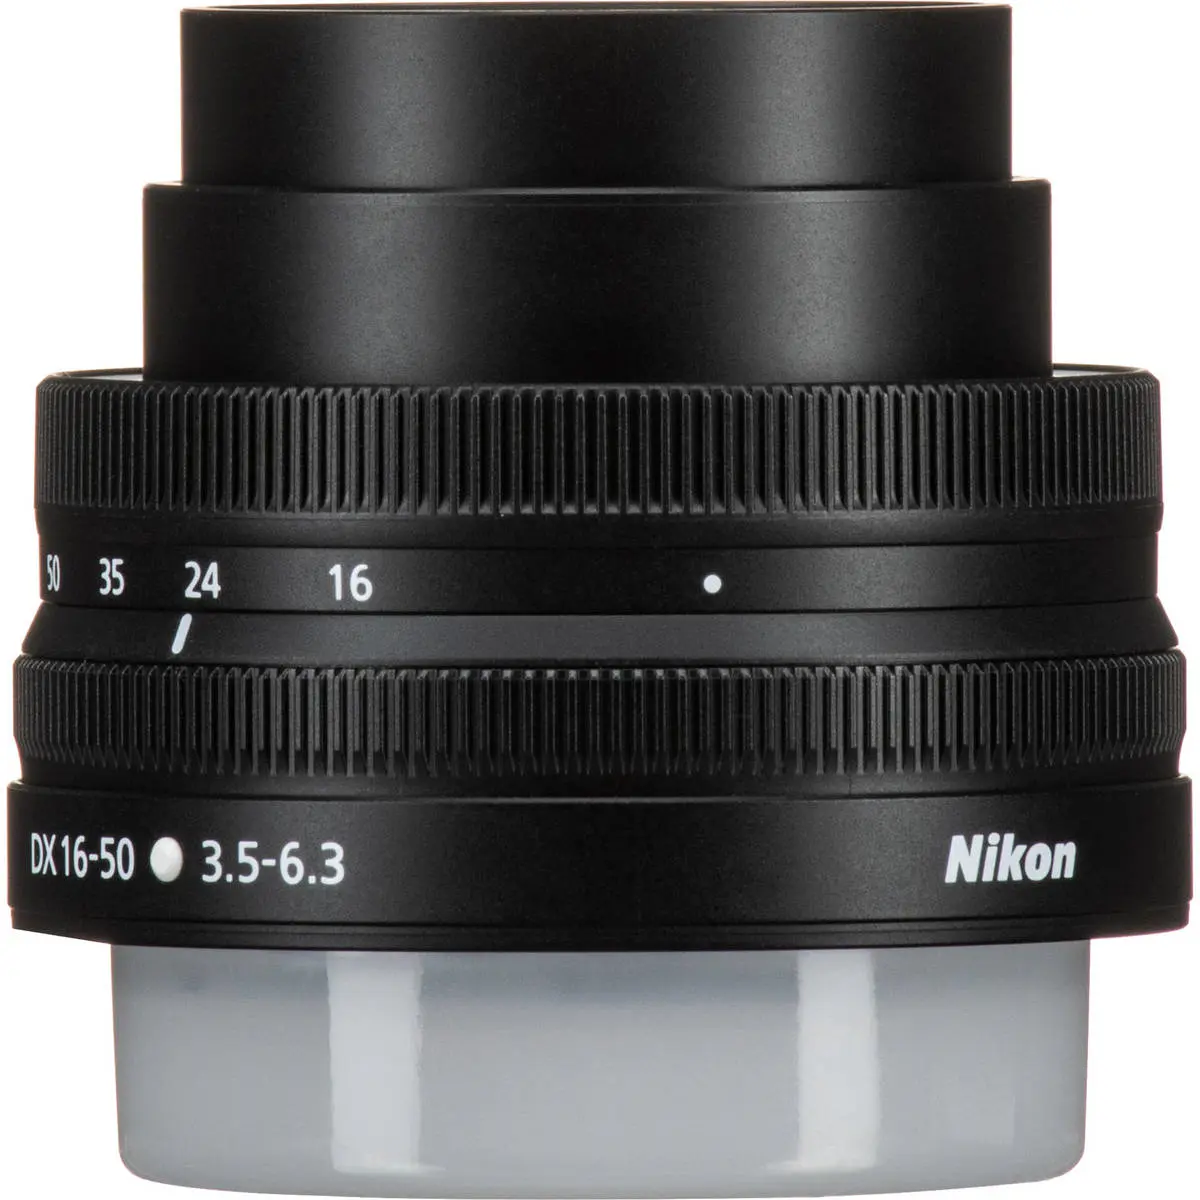 3. Nikon NIKKOR Z DX 16-50MM F/3.5-6.3 VR